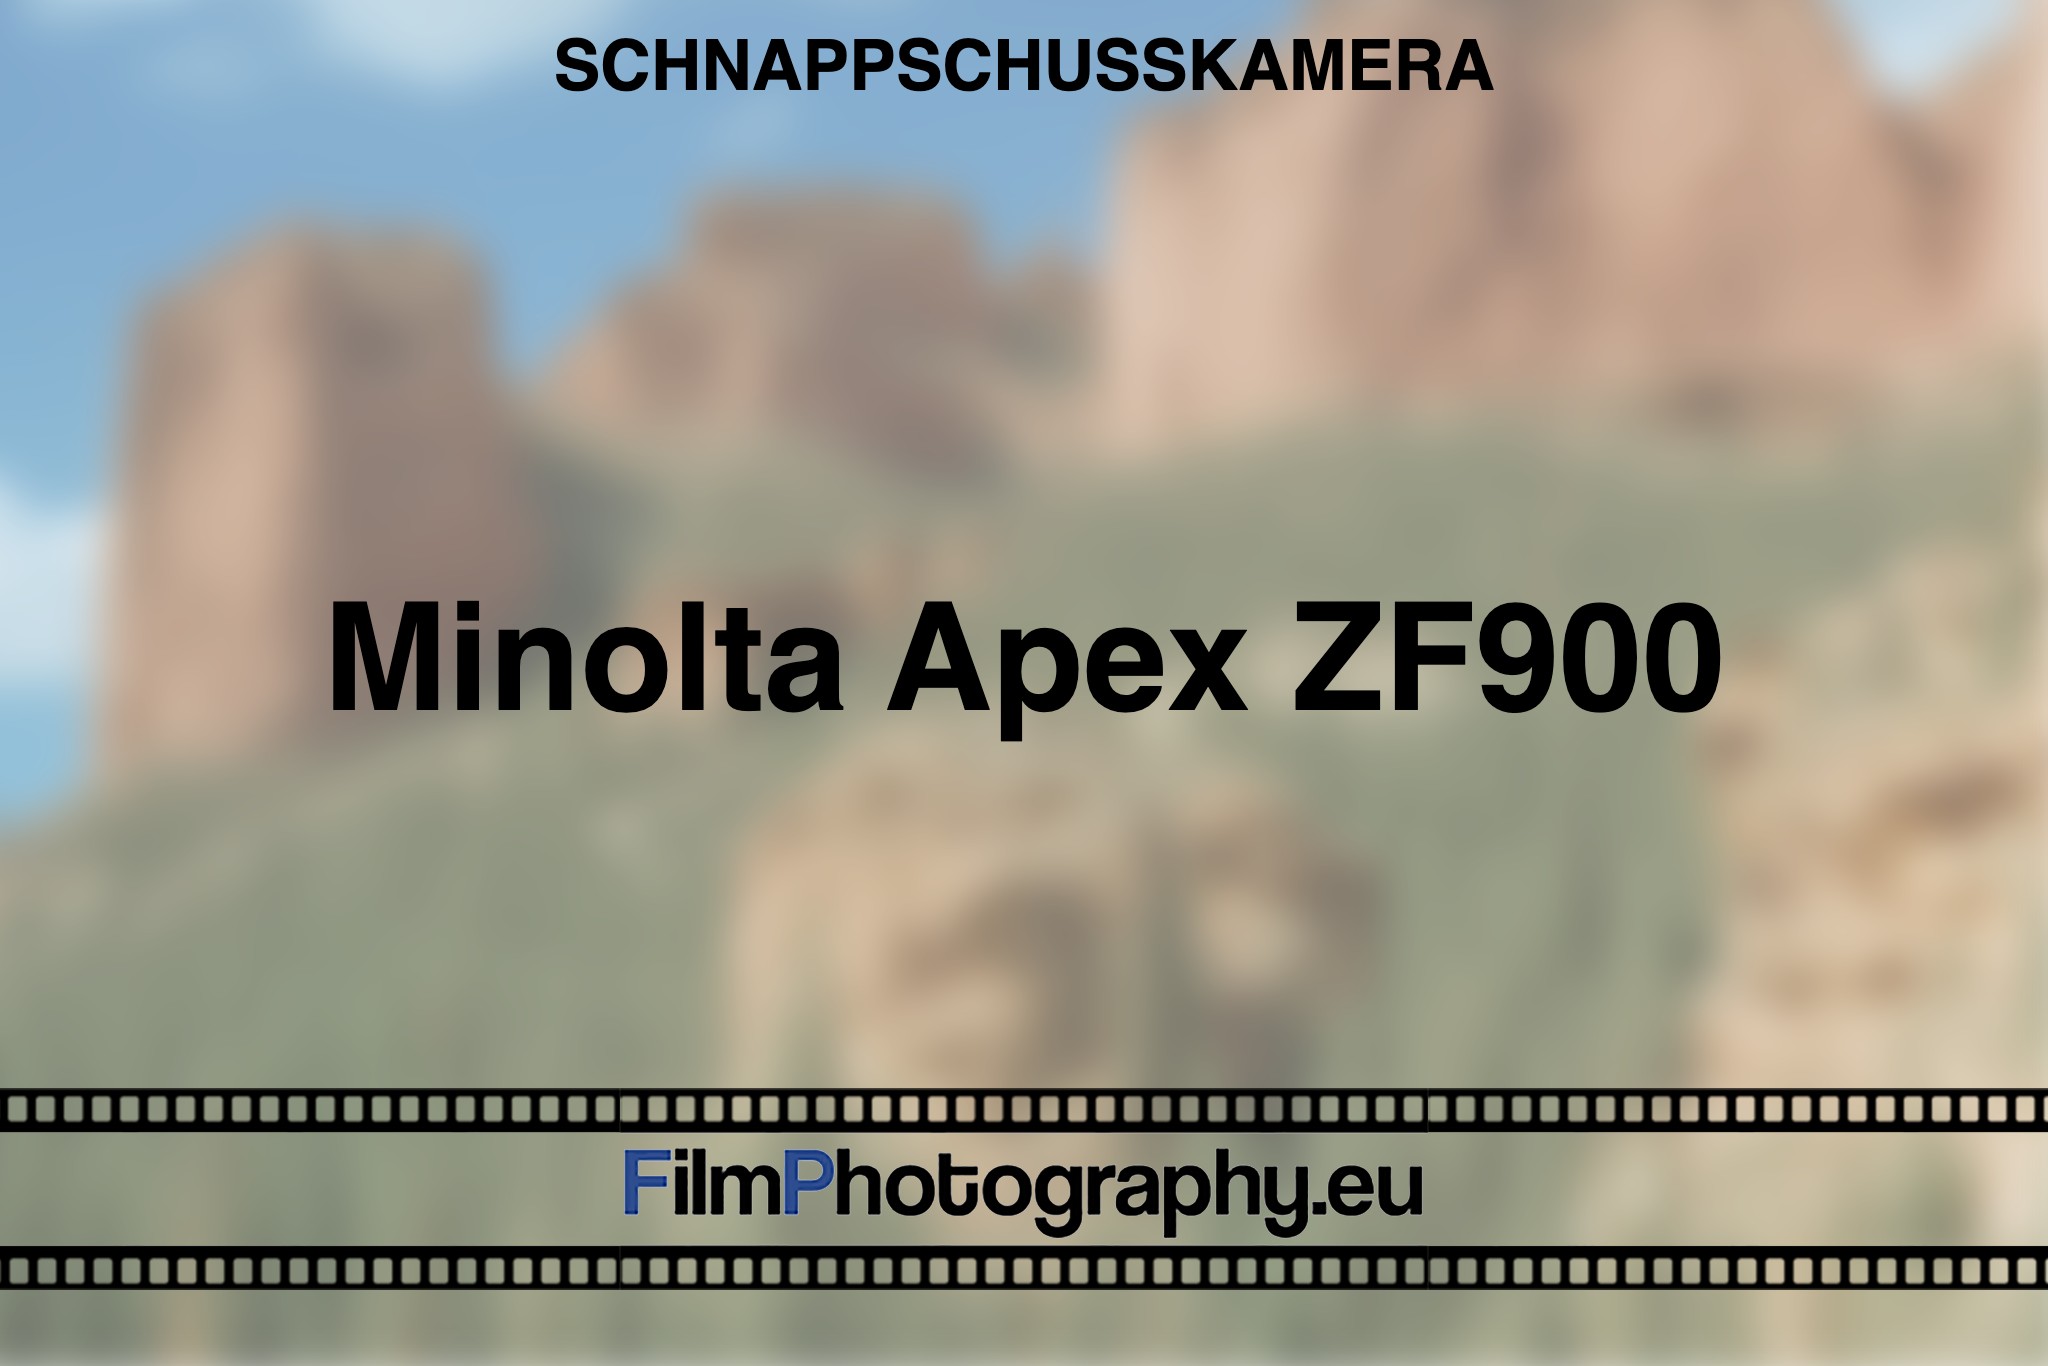 minolta-apex-zf900-schnappschusskamera-bnv